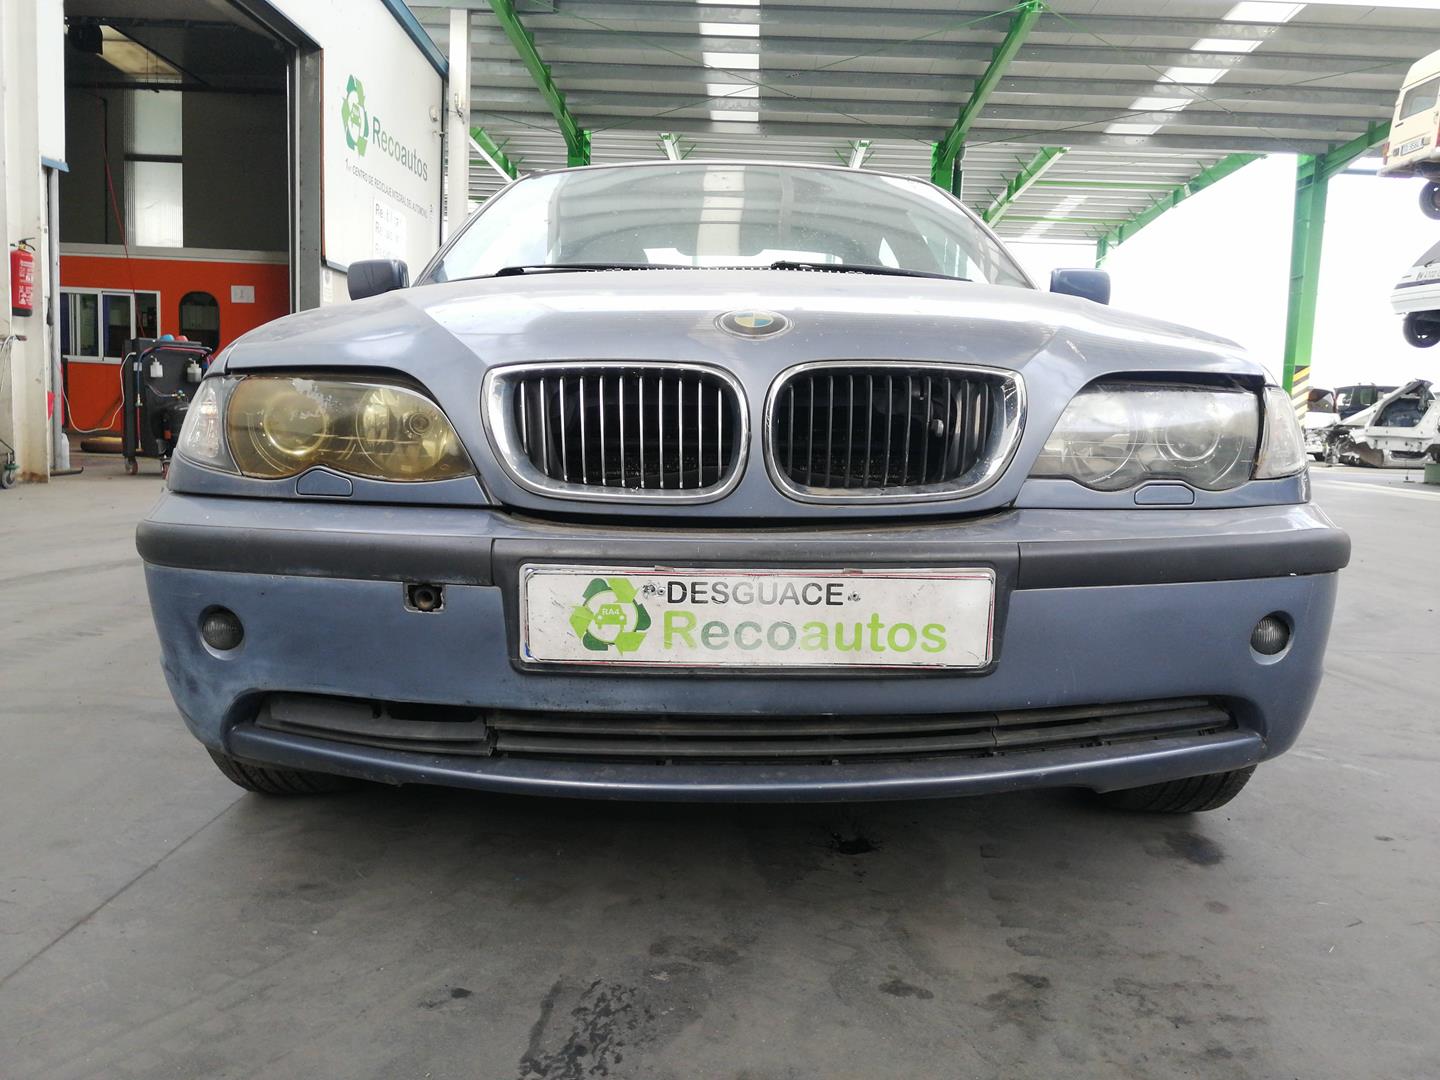 BMW 3 Series E46 (1997-2006) Greičių dėžė (pavarų dėžė) HED, 080736HED, 23001434404 21103729